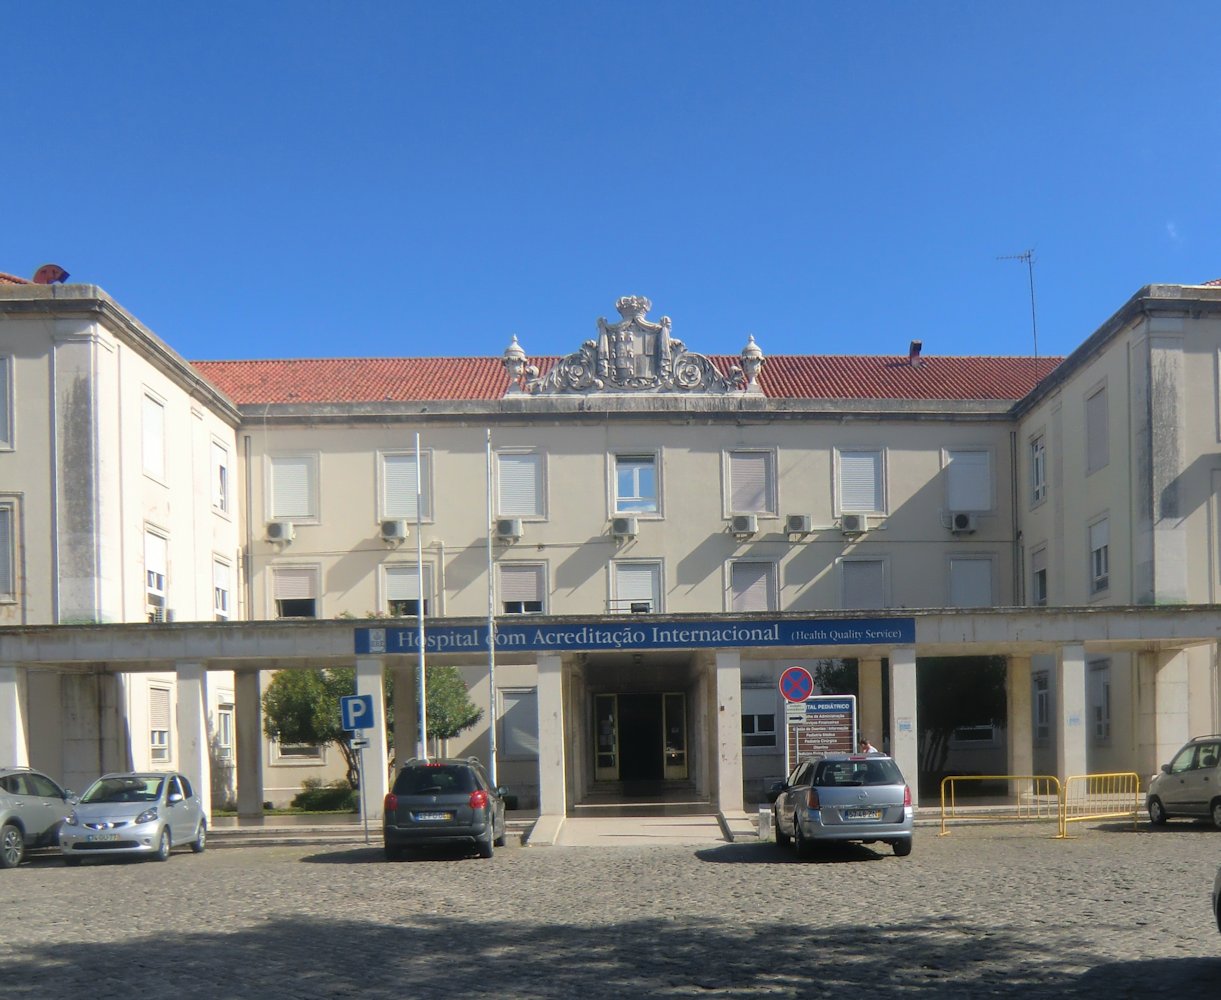 Krankenhaus Dona Estefânia in Lissabon